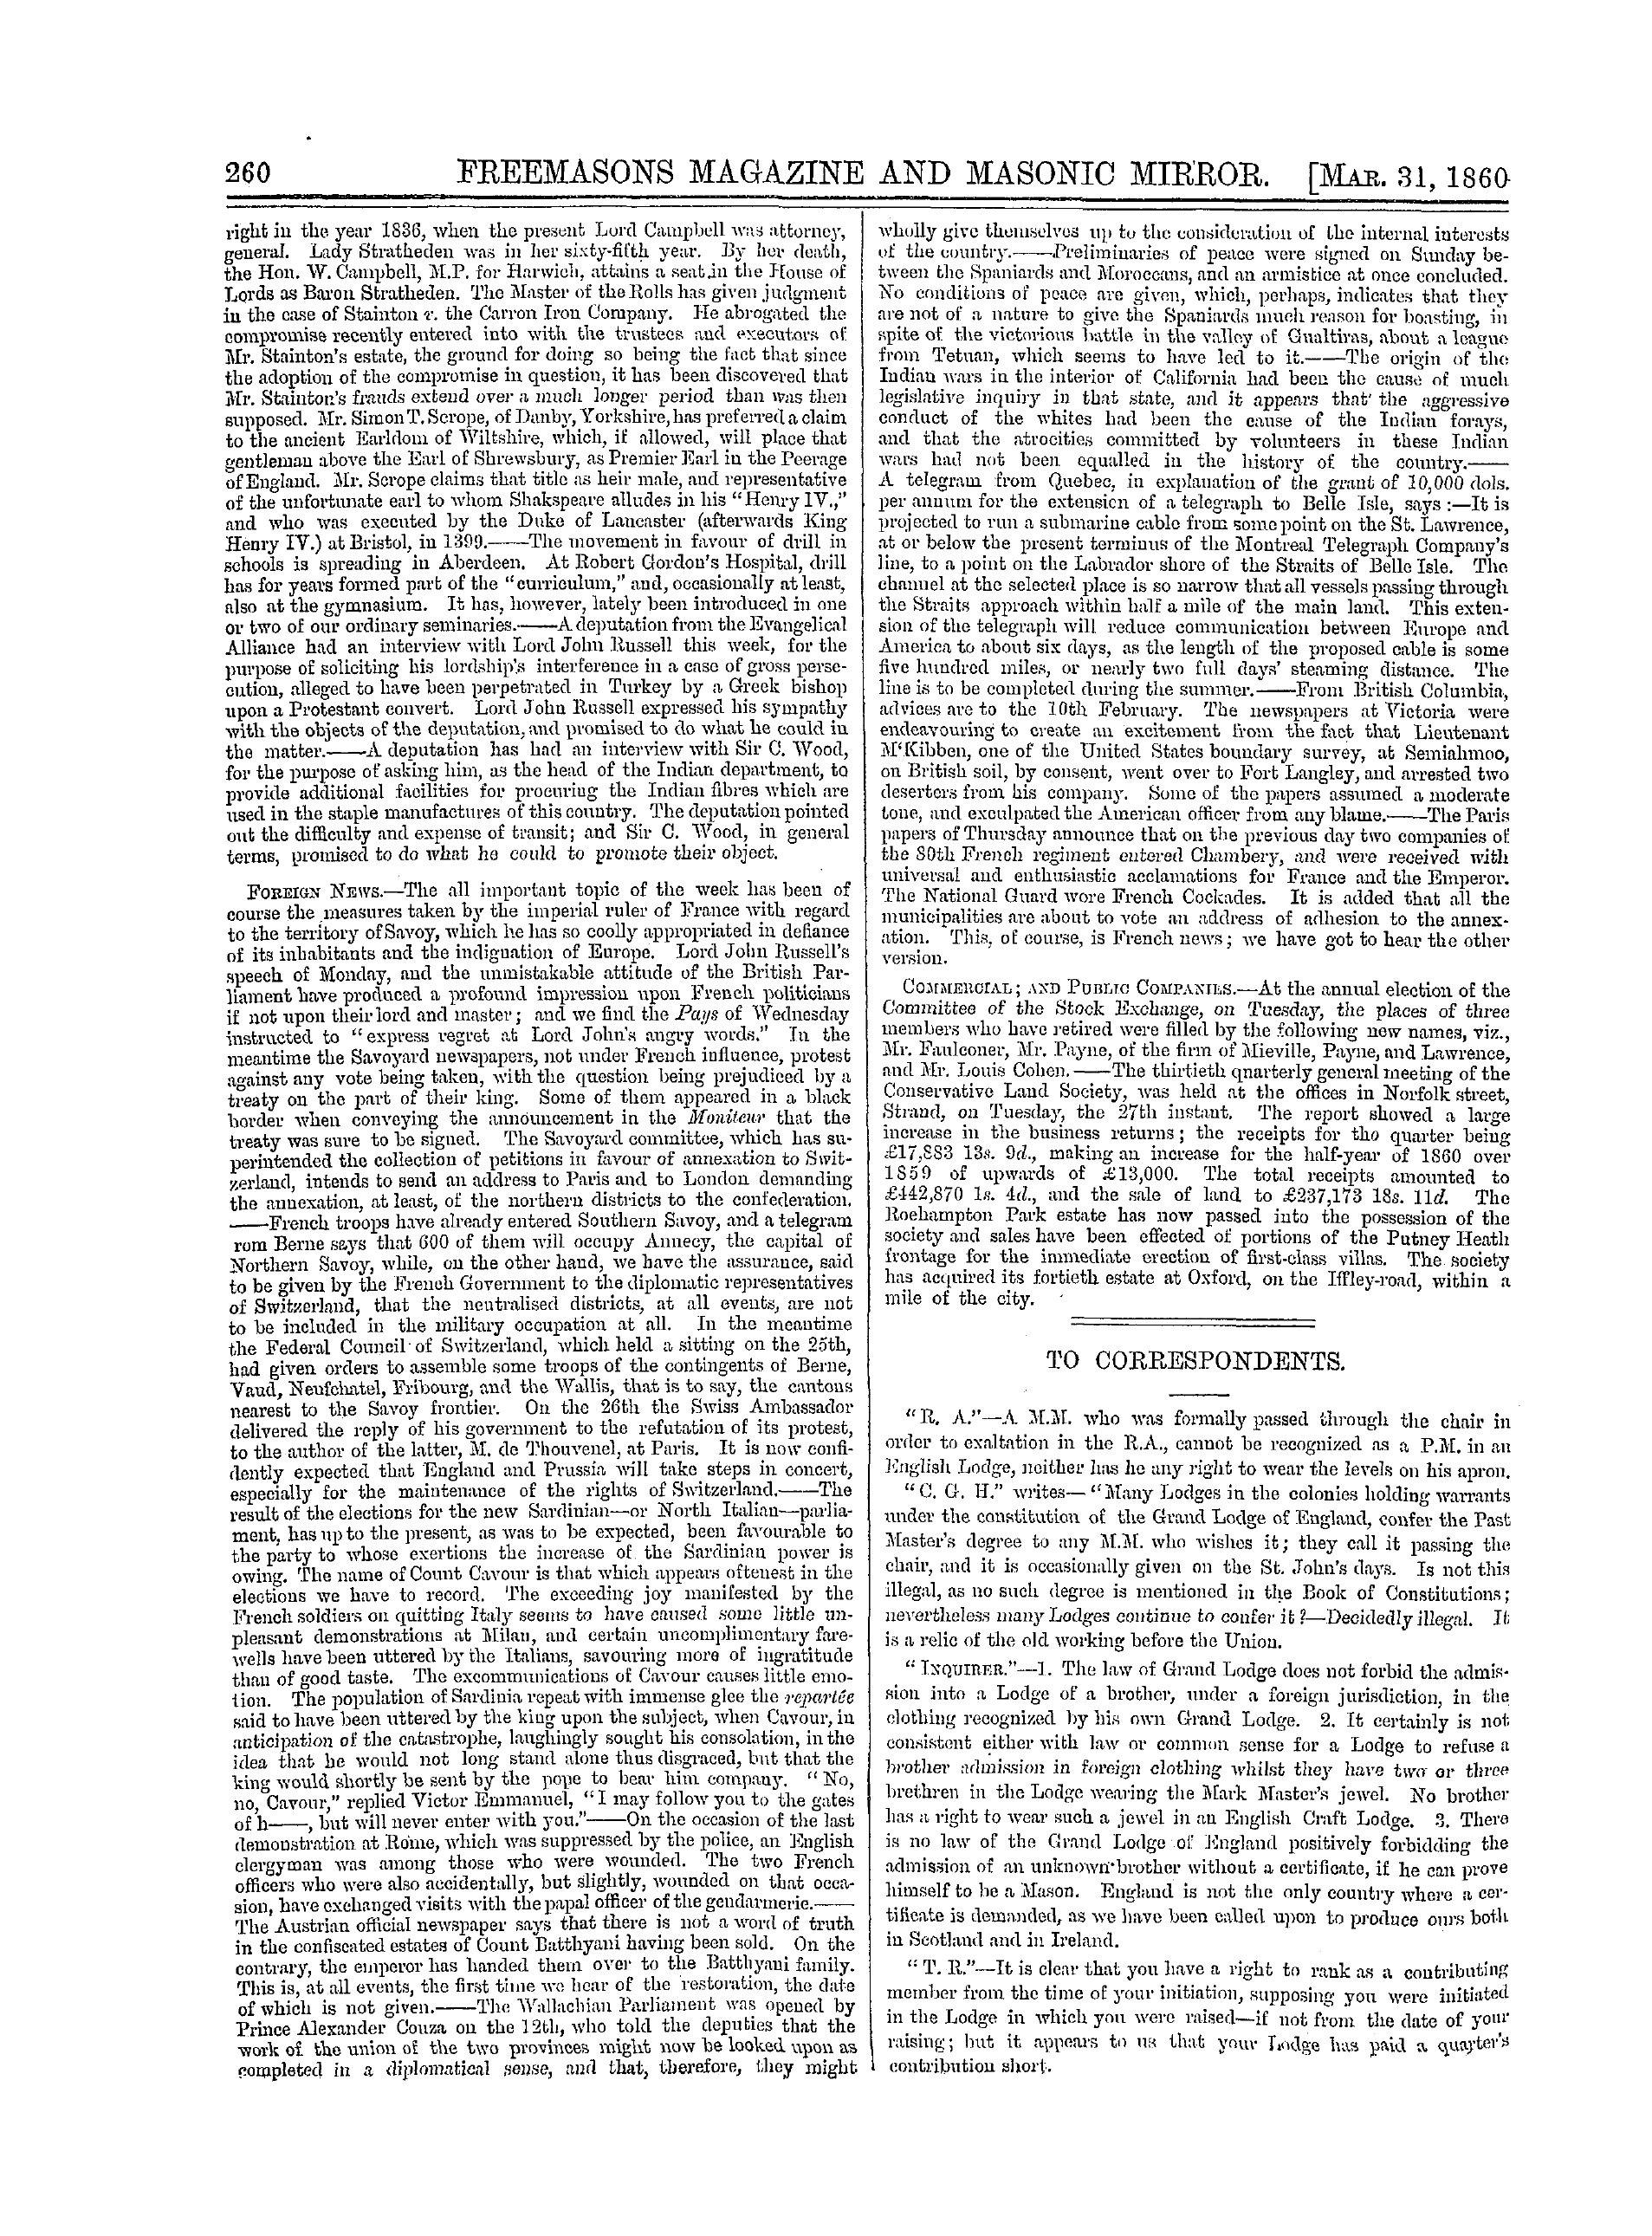 The Freemasons' Monthly Magazine: 1860-03-31 - To Correspondents.